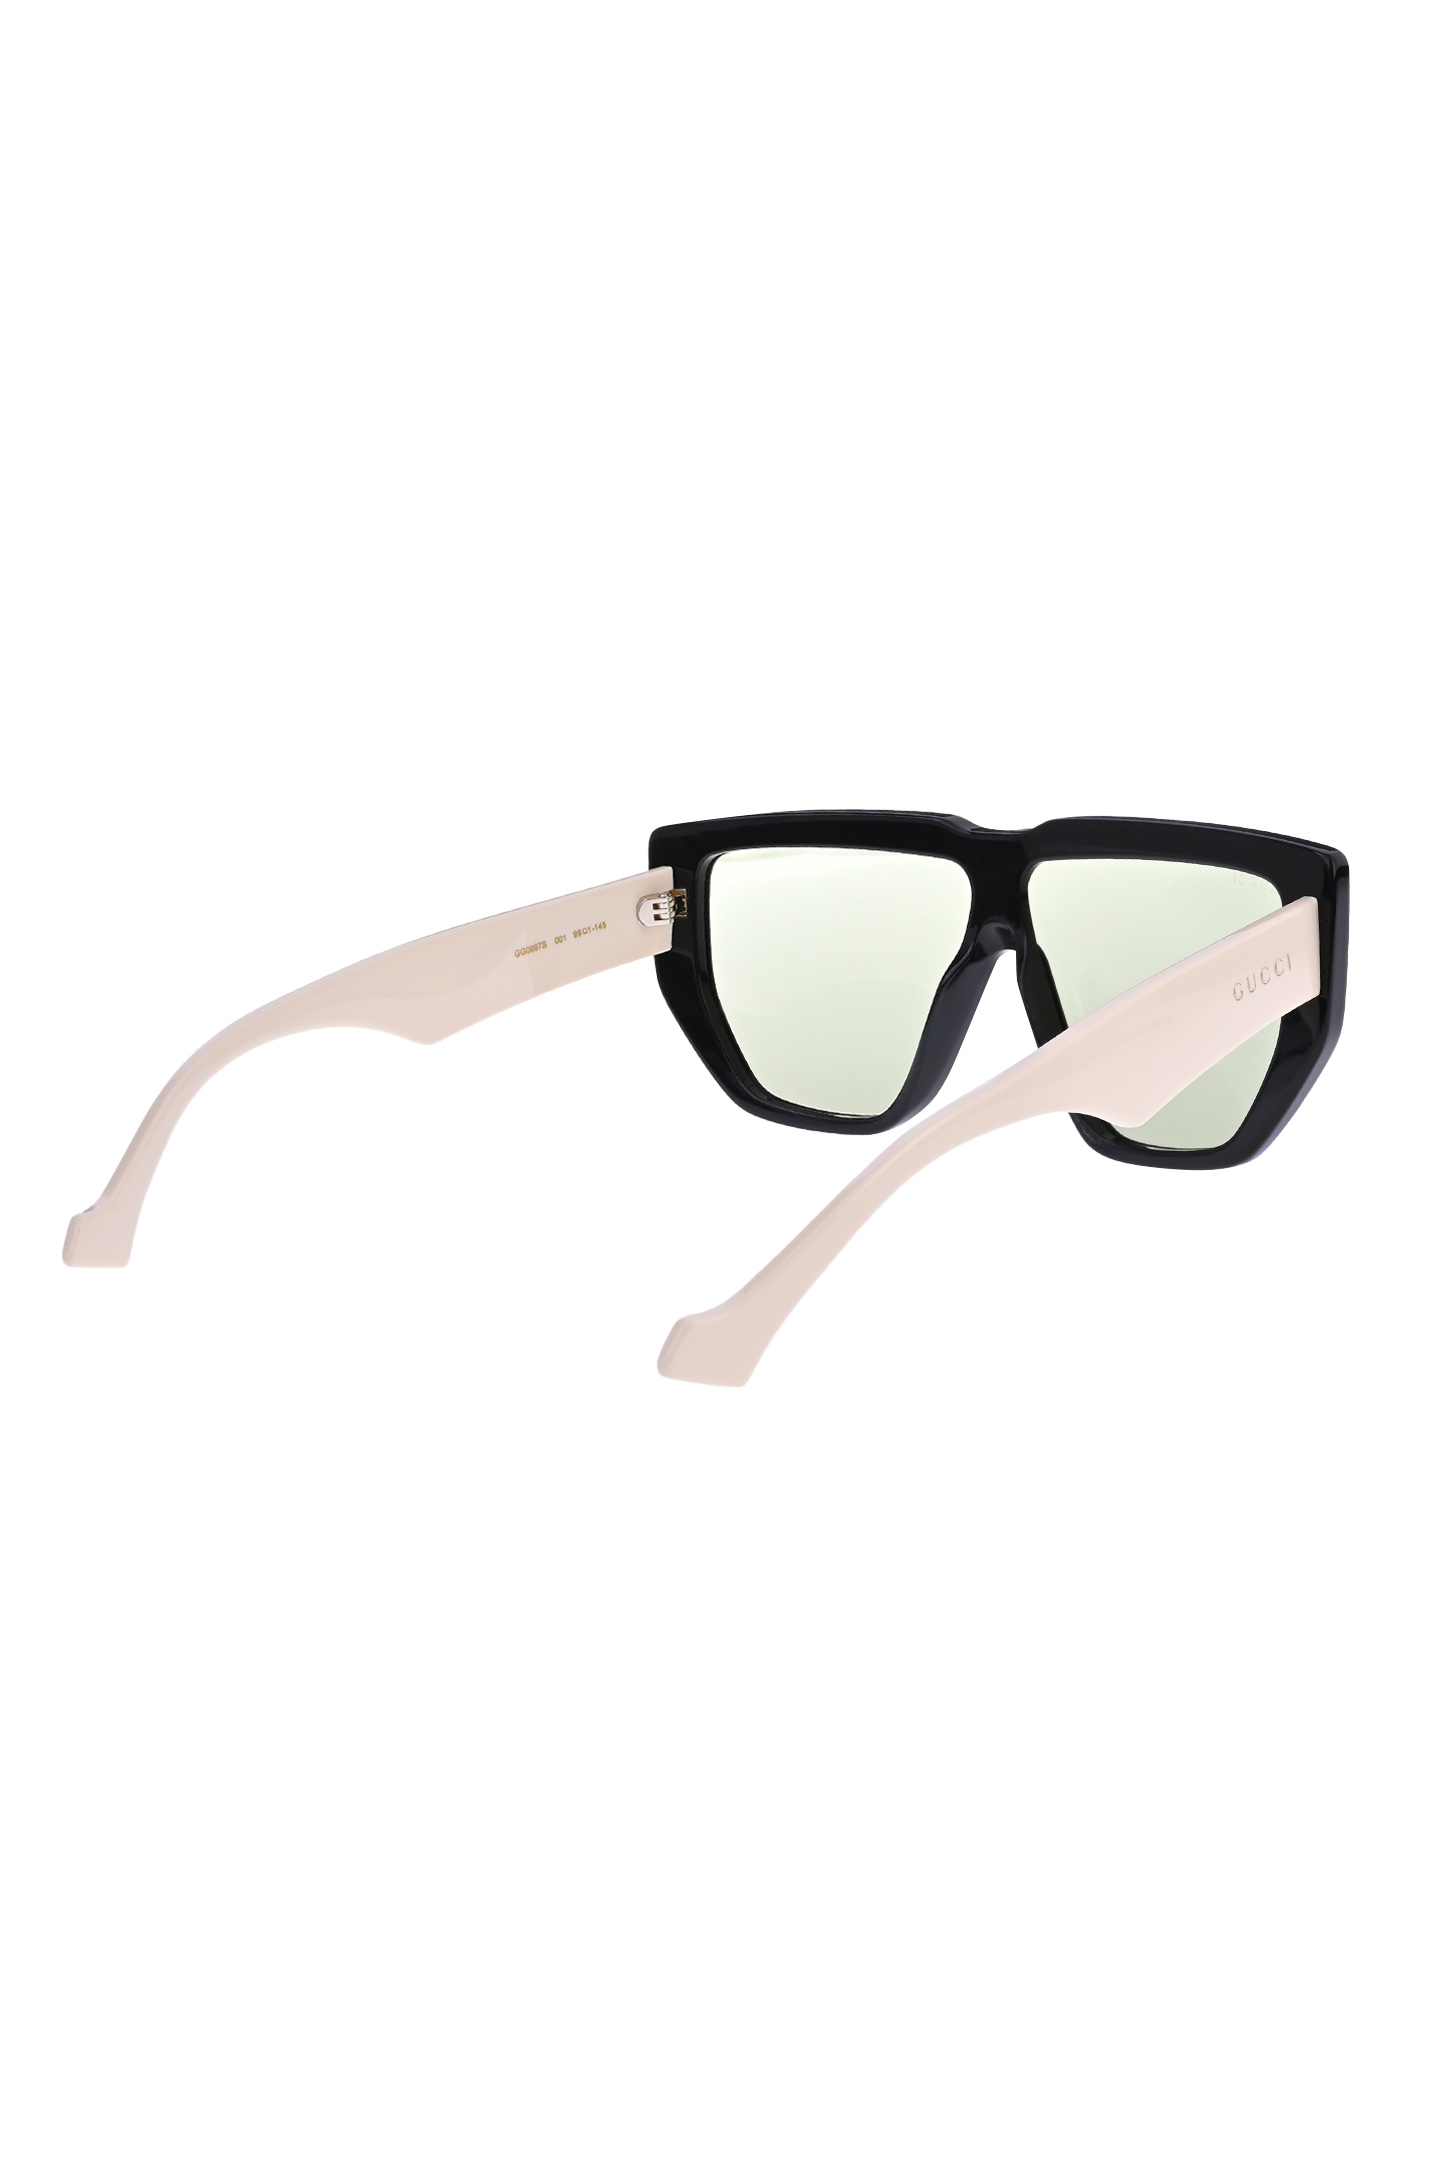 Солнцезащитные очки GUCCI 681736 J0740, цвет: Черный, Unisex